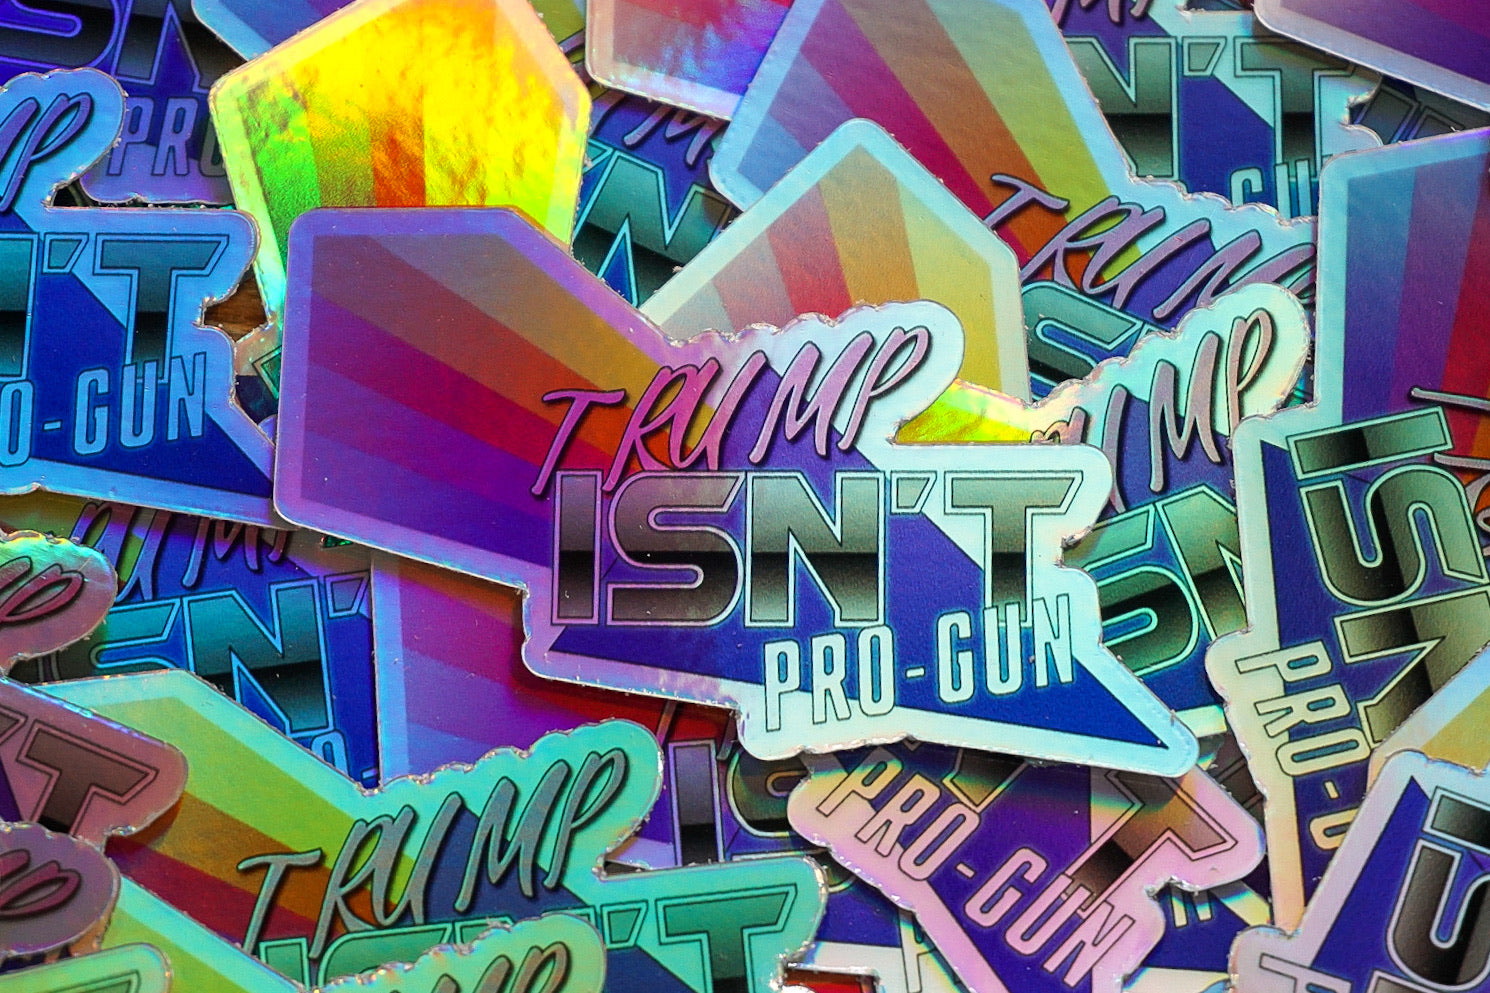 Trump Isn’t Pro Gun Stickers